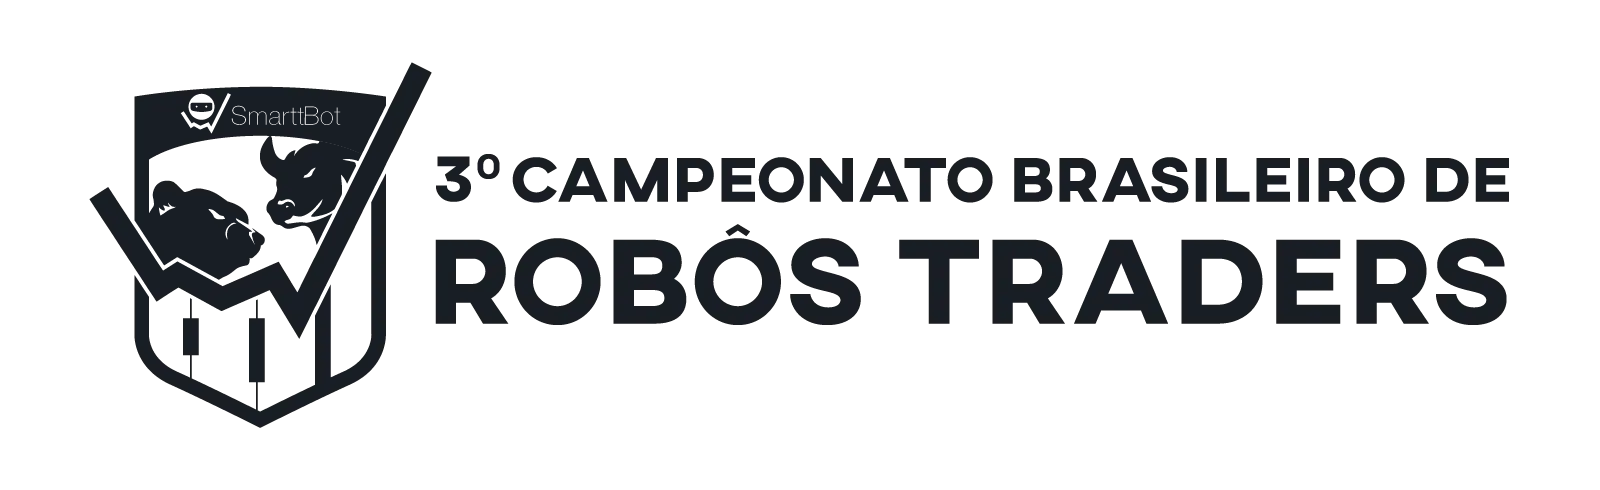 campeonato brasileiro de robôs traders